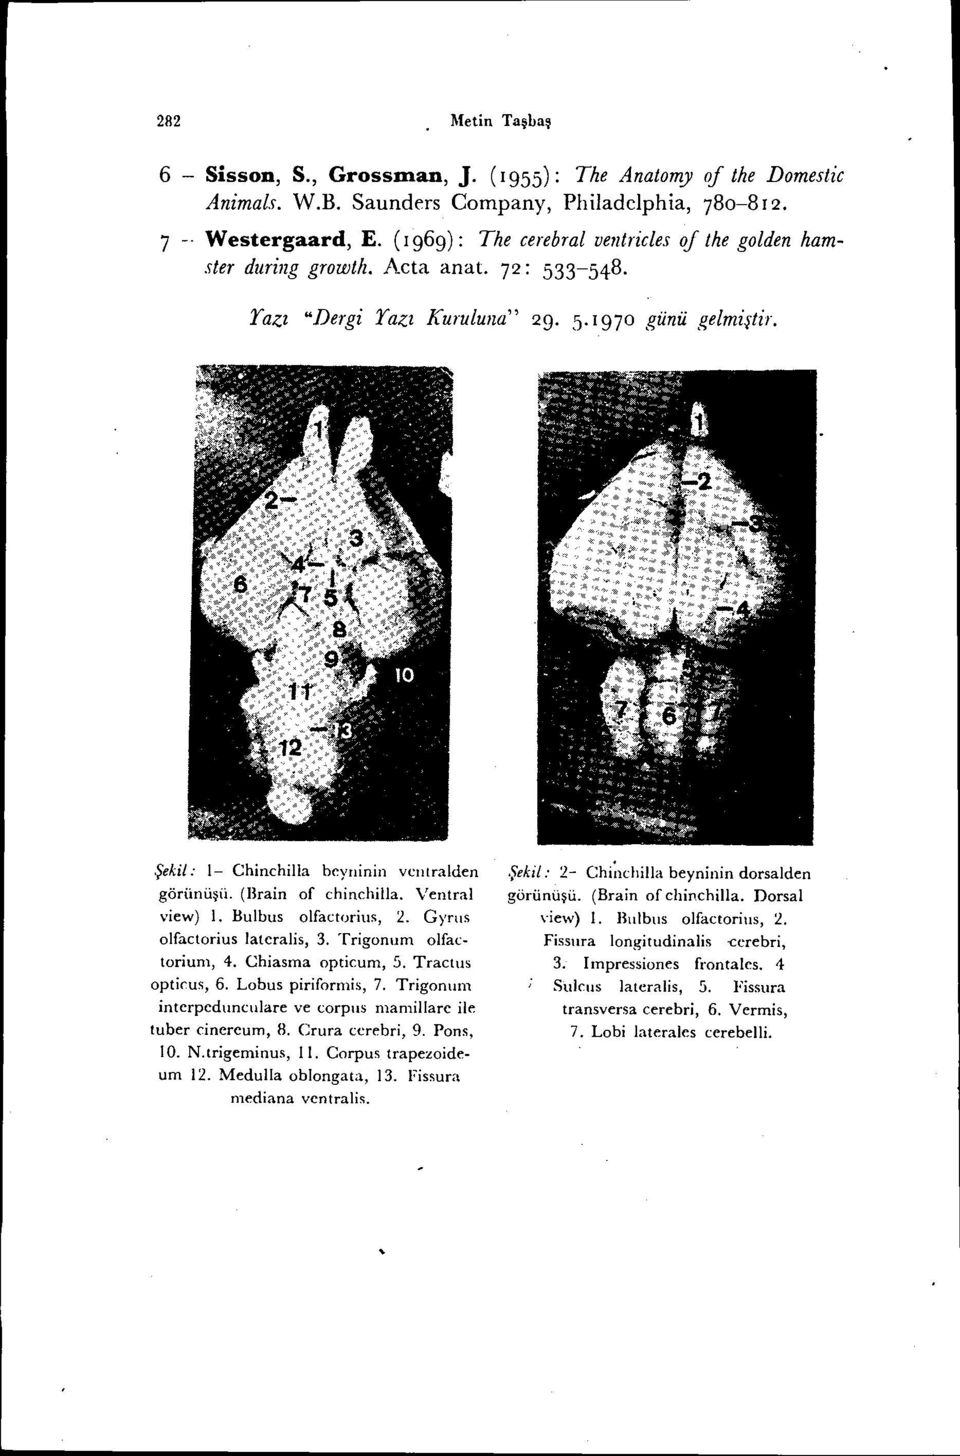 Ventral view) i. Bulbus olfactorius, 2. Gynıs olfactorius lateralis, 3. Trigonum olfactorium, 4. Chiasma opticum, 5. Tractus optirus, 6. Lobus piriformis, 7.